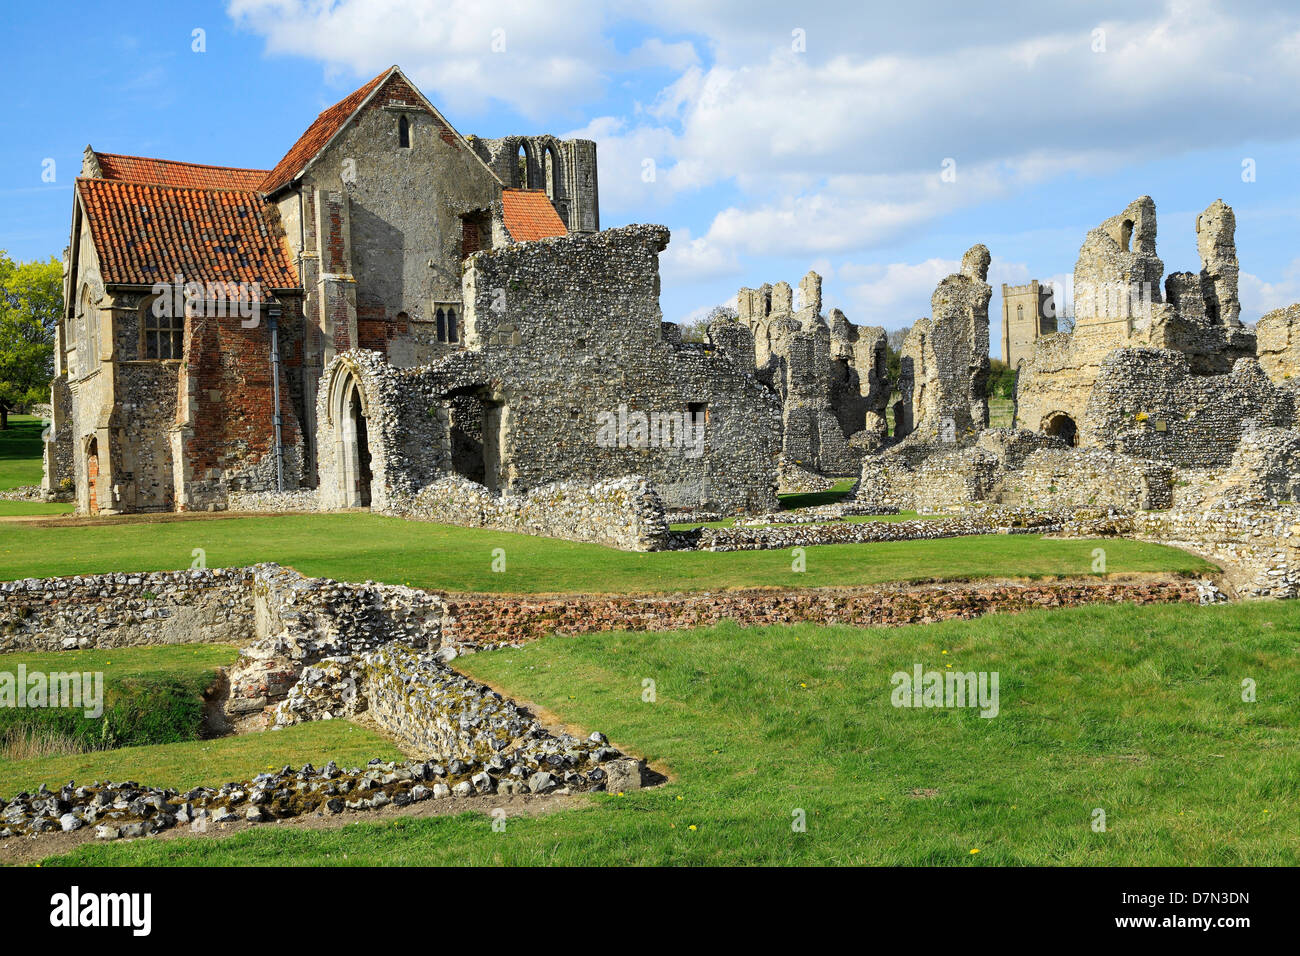 Castle Acre Prieuré, Norfolk, avant et du logement pour les ruines monastiques, Angleterre, Royaume-Uni, le monastère médiéval de Cluny, prieurés Anglais Banque D'Images